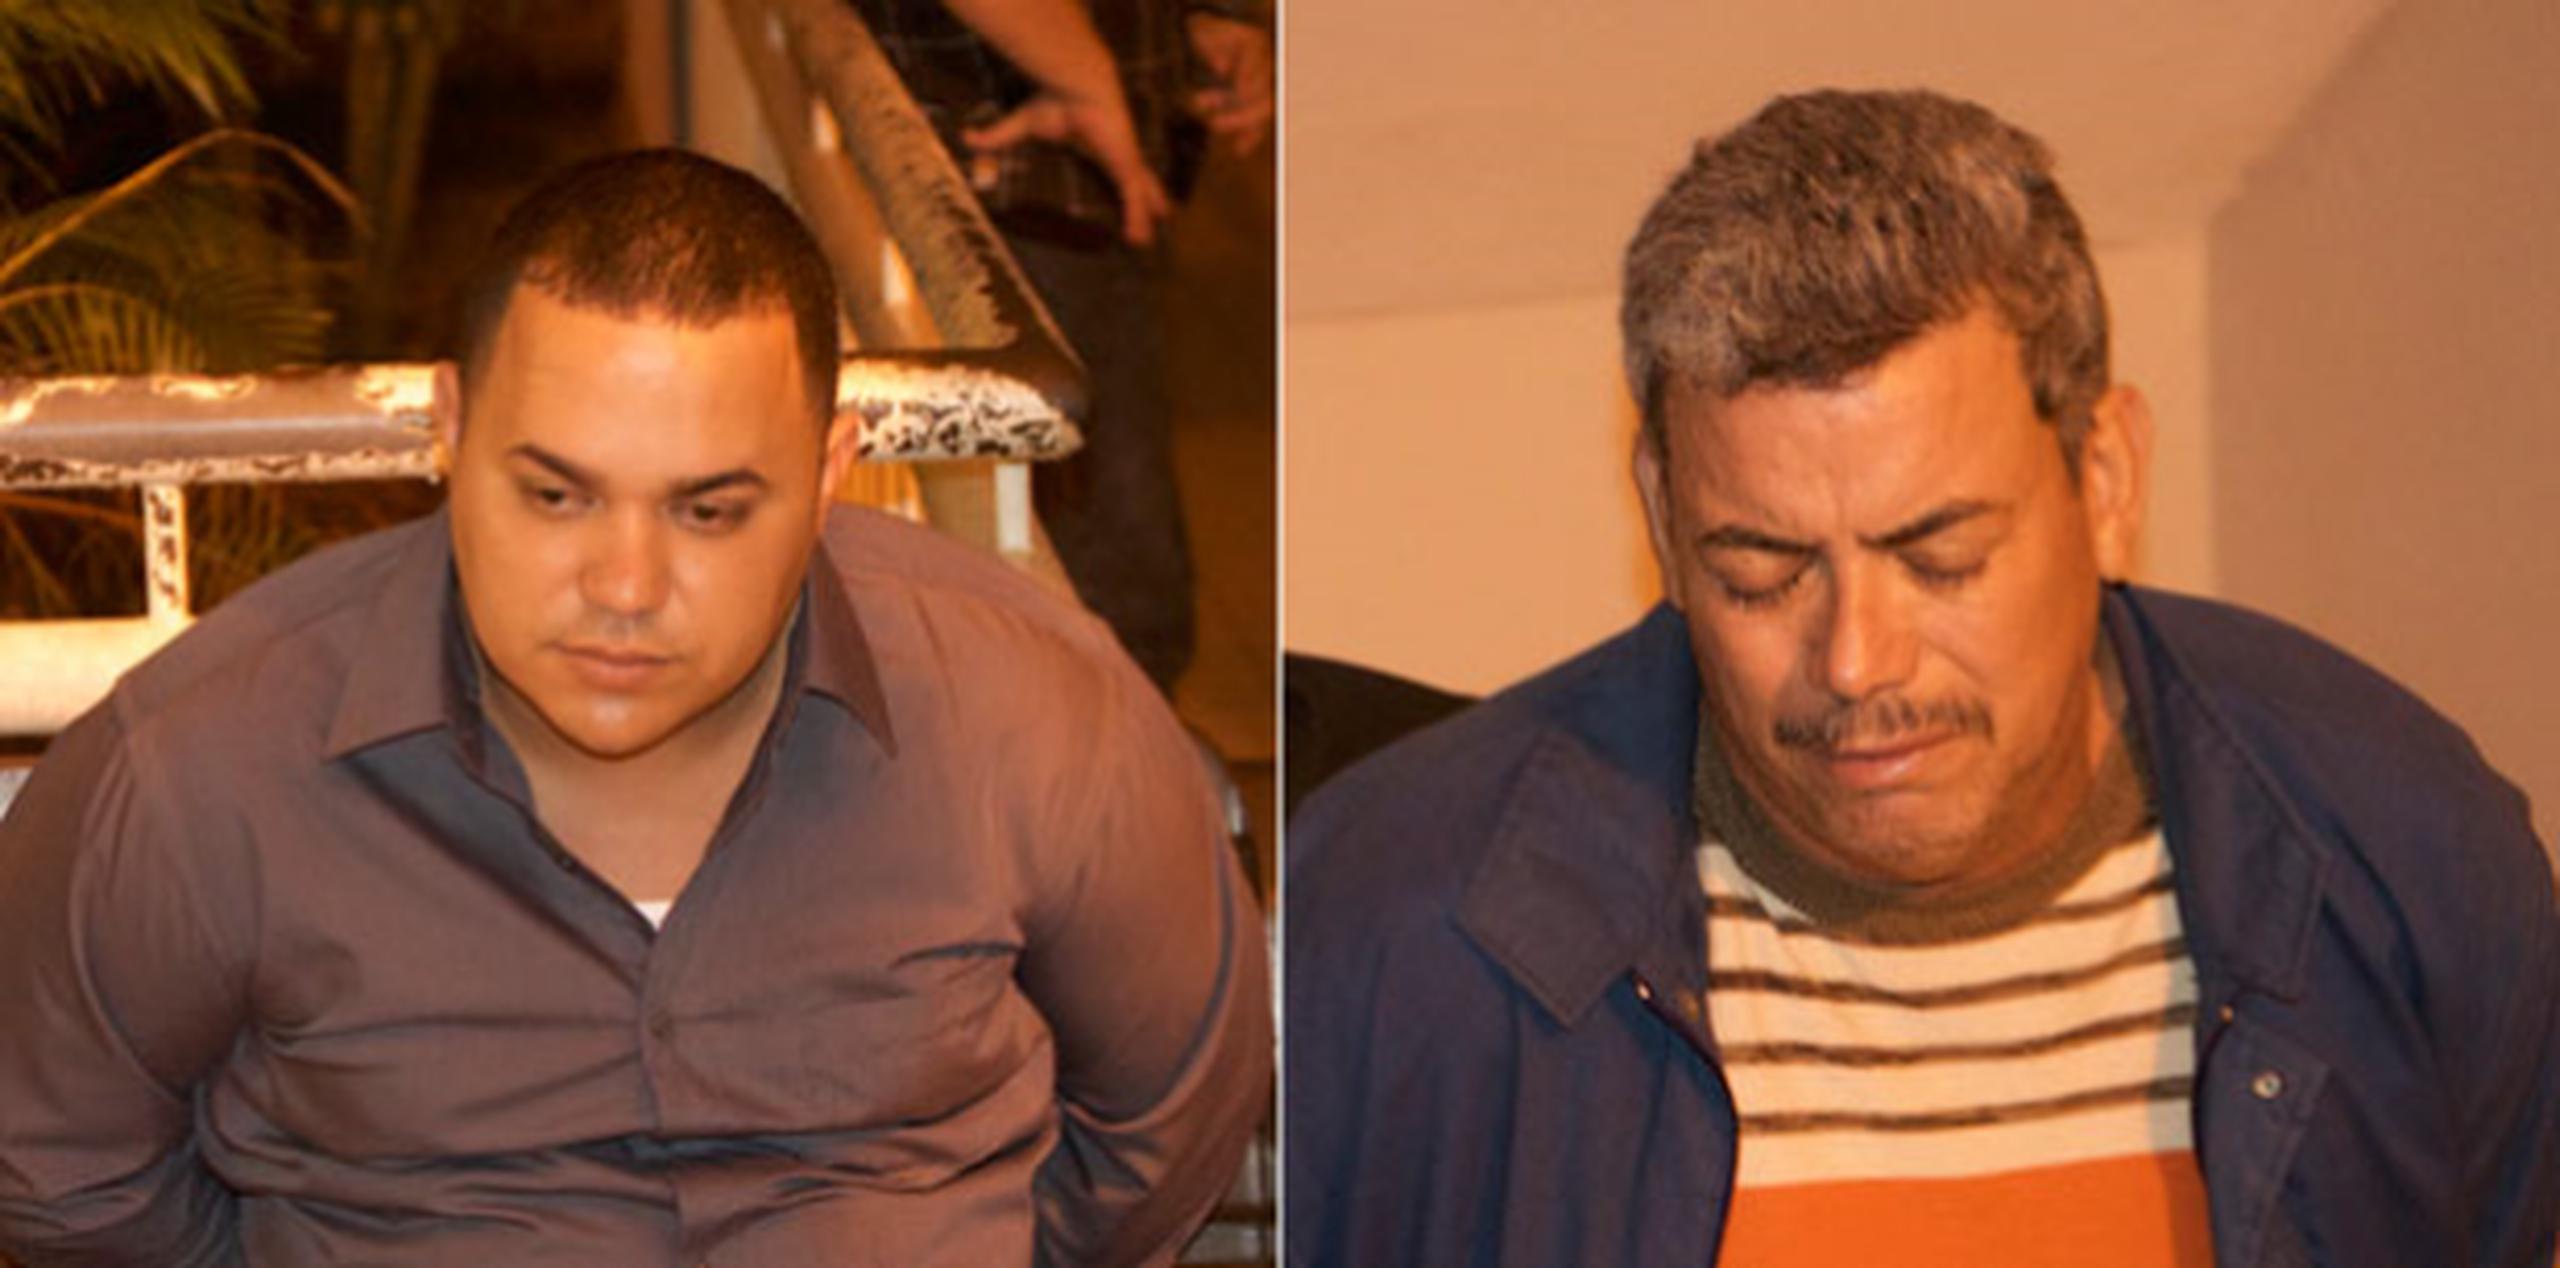 Uno de los sujetos fue capturado por las autoridades, mientras que el otro se entregó con su abogado. (jose.candelaria@gfrmedia.com)